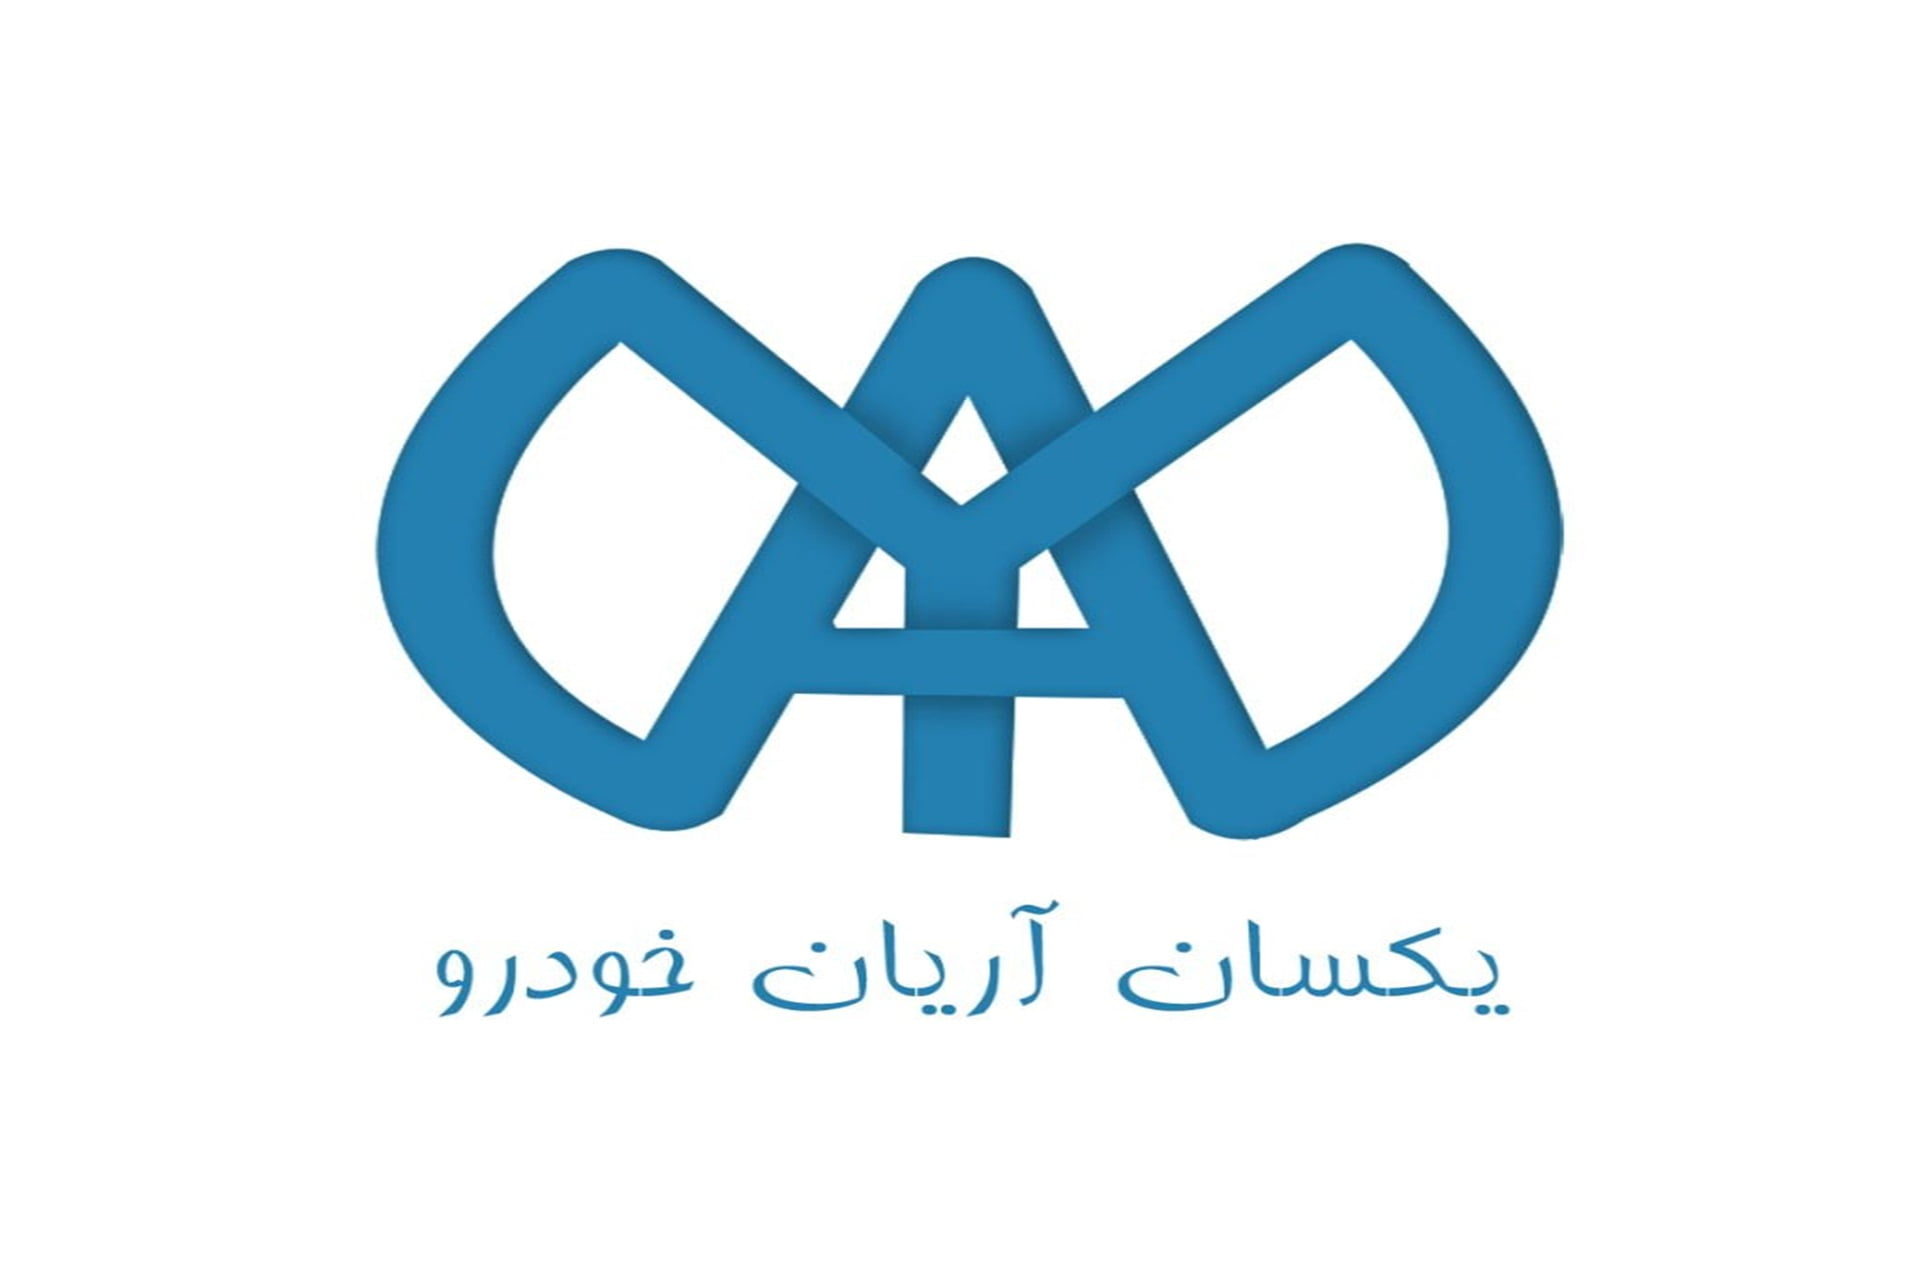 تمدید عضویت شرکت یکسان در انجمن تحقیق، توسعه و نوآوری صنایع و معادن ایران